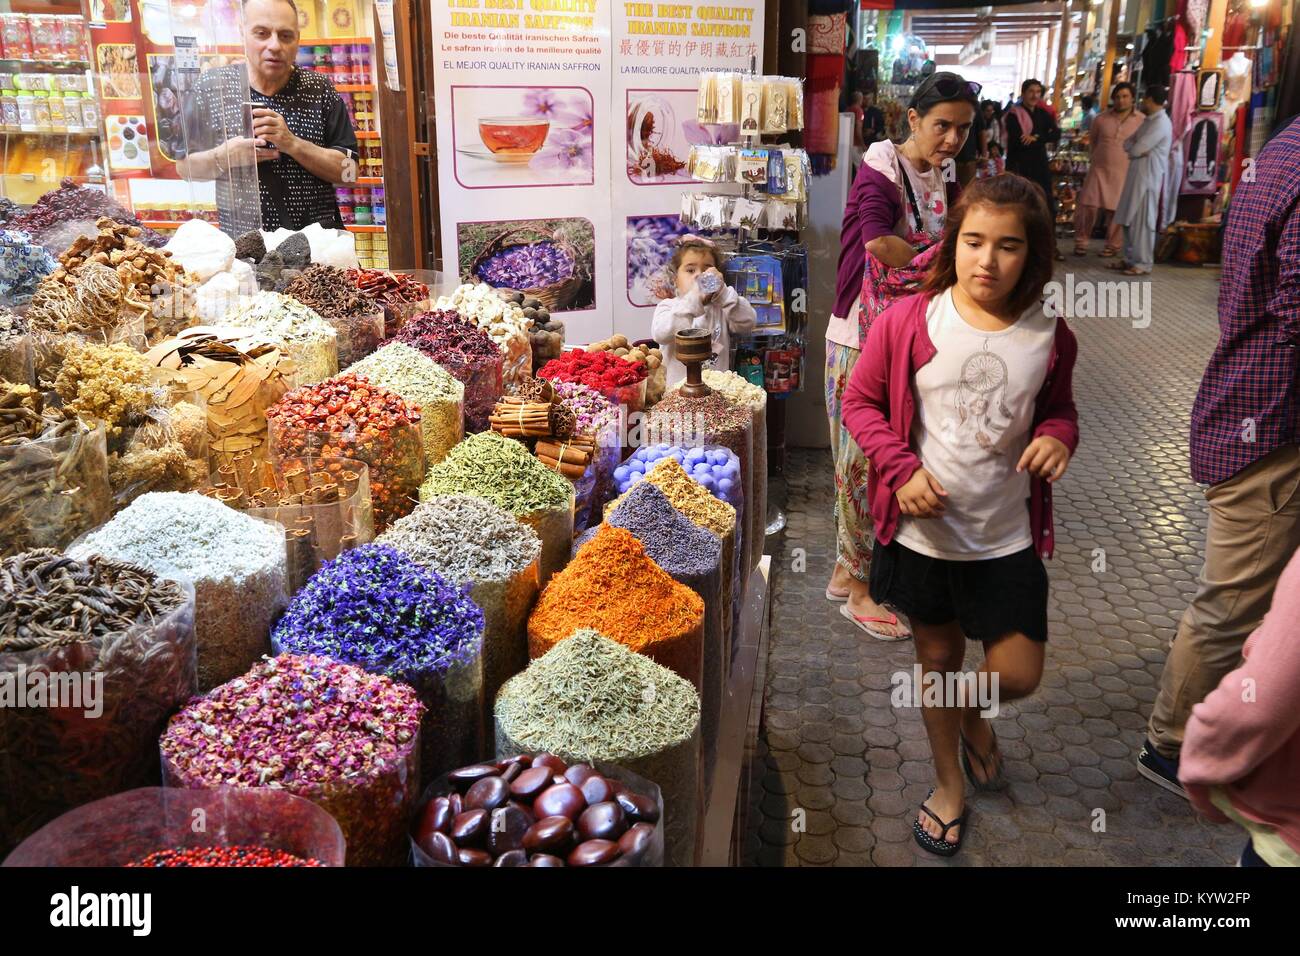 DUBAI, VAE - Dezember 10, 2017: die Menschen besuchen die Spice Souk in Dubai, VAE. Die traditionelle Spice Market ist im Deira Viertel von Dubai. Stockfoto